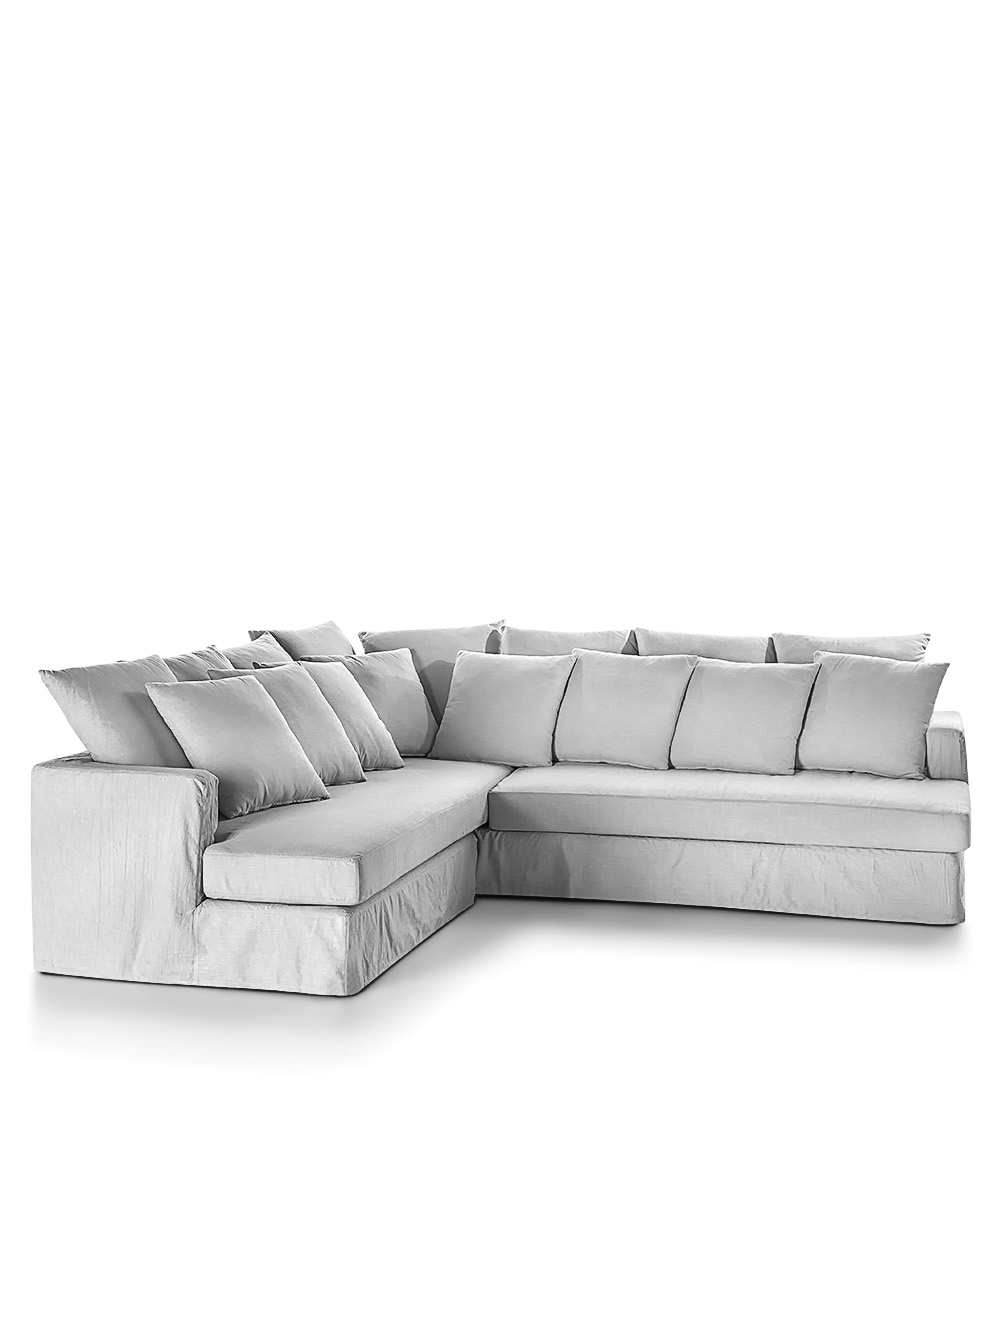 Sofa en ele blanco-LULU EN L DERECHA TUSOR BLANCO-Landmark-00.jpg image number null